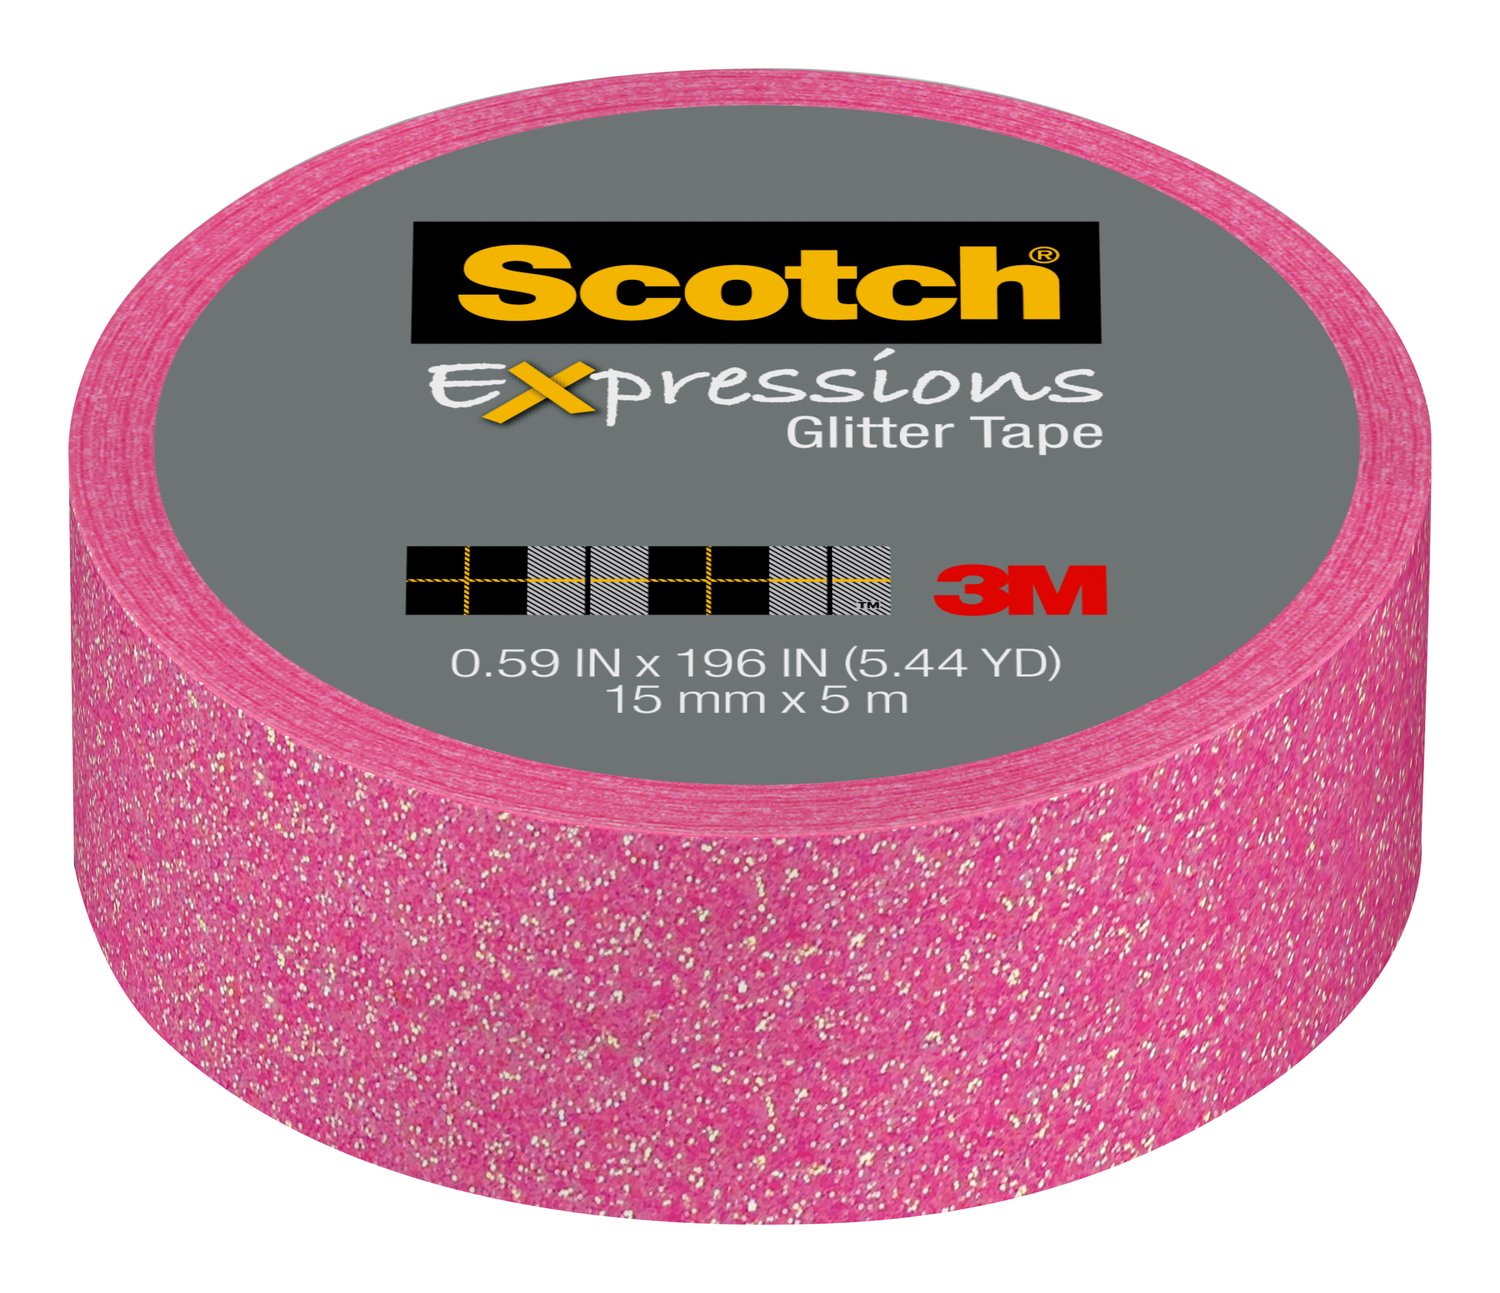 7100078336 - Scotch Expressions Glitter Tape C514-PNK2, .59 in x 196 in (15 mm x 5
m), Pastel Pink Glitter